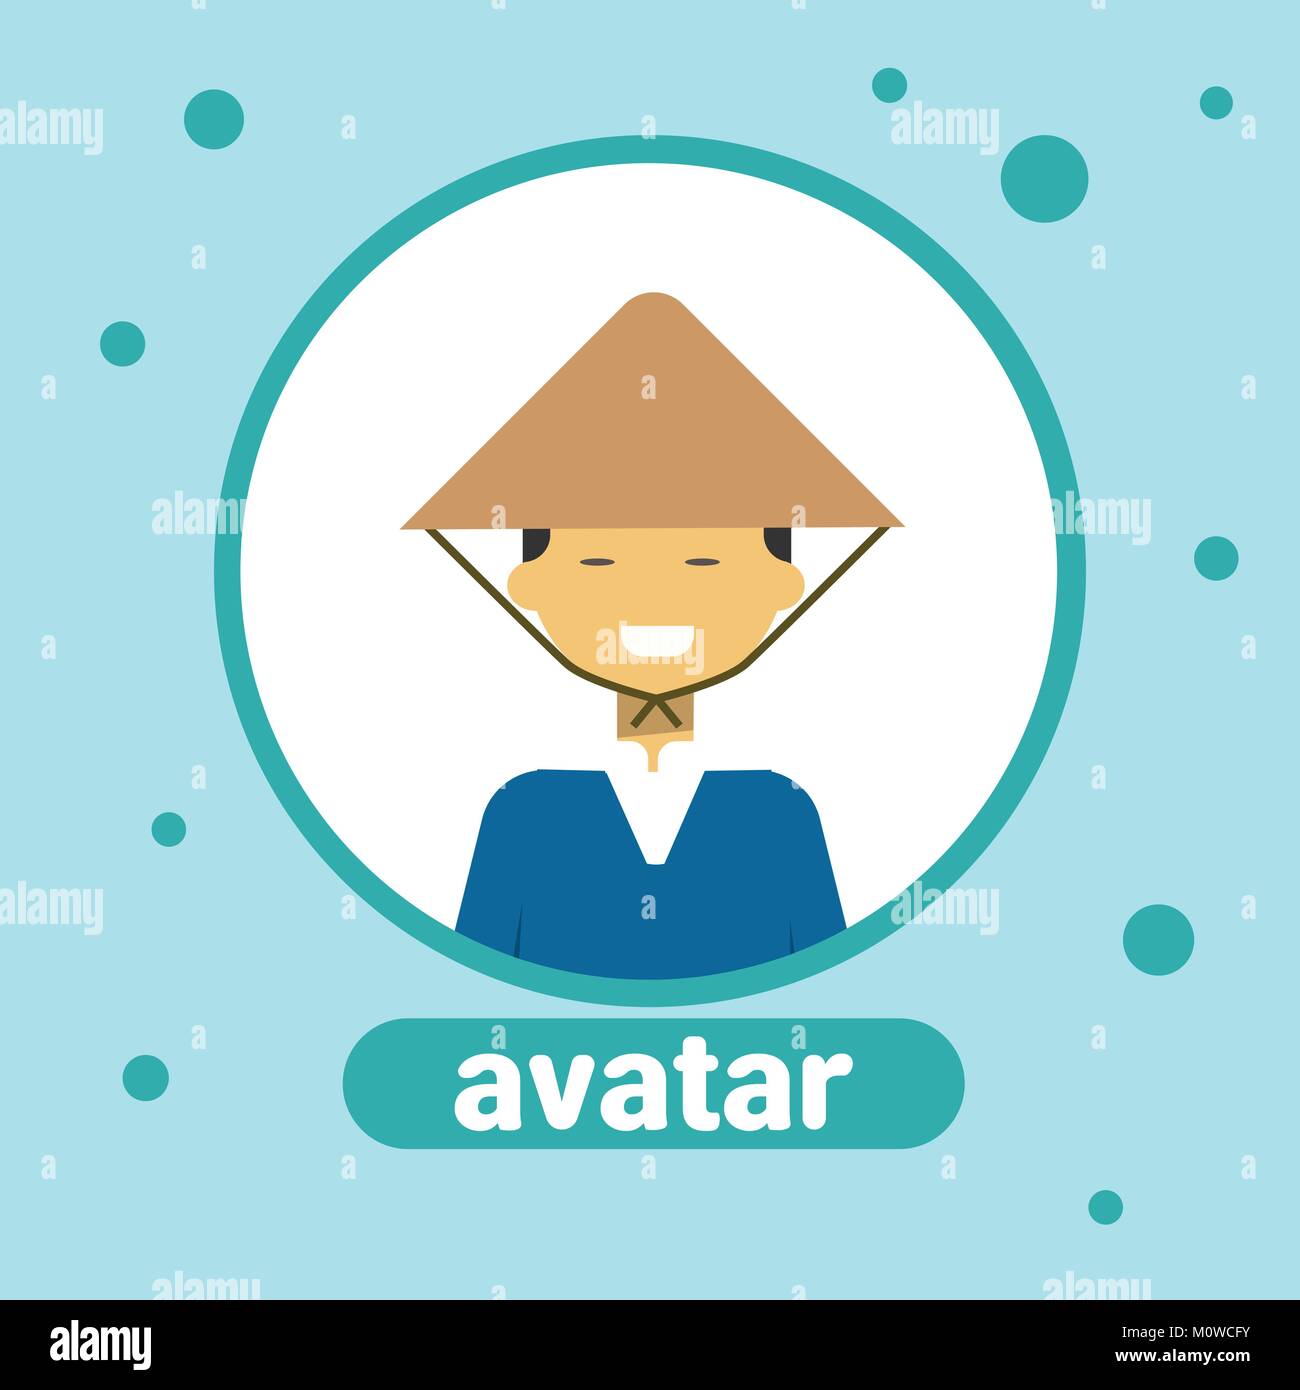 L'Homme asiatique Icône Avatar mâle vietnamiens en costume traditionnel Portrait de profil Illustration de Vecteur